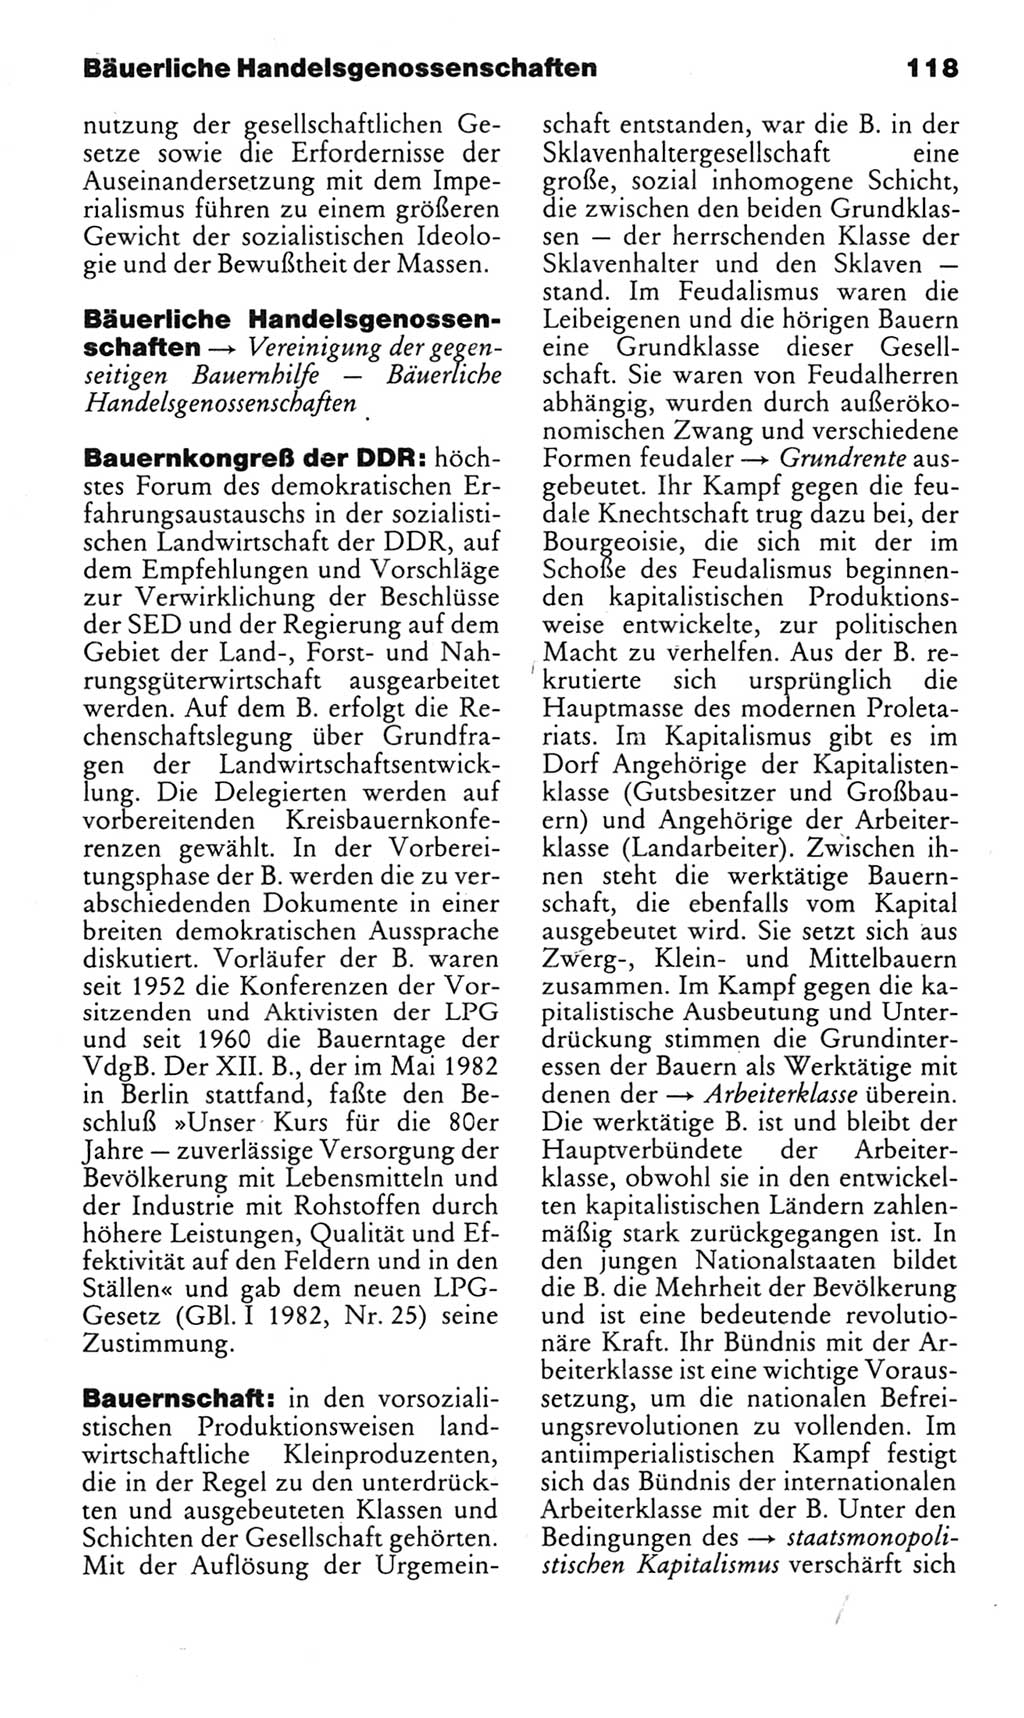 Kleines politisches Wörterbuch [Deutsche Demokratische Republik (DDR)] 1985, Seite 118 (Kl. pol. Wb. DDR 1985, S. 118)